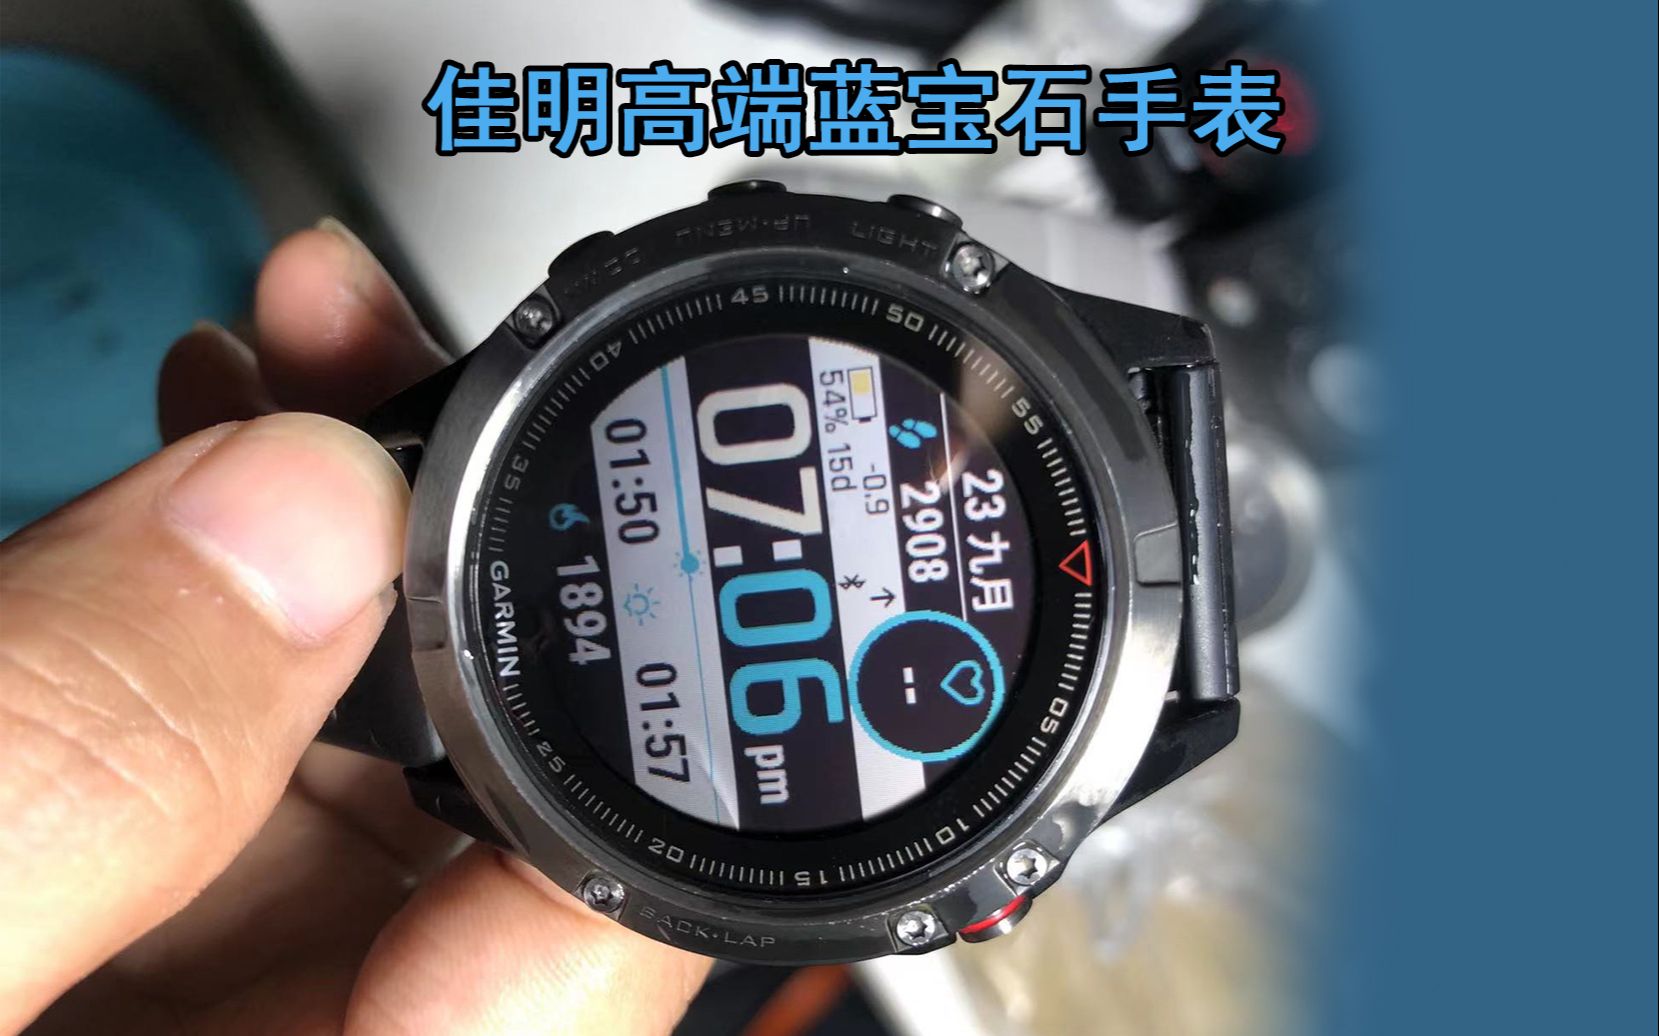 一千元以内能买到的最好的拥有蓝宝石镜面的户外旗舰运动手表，佳明feinx 5X评测。